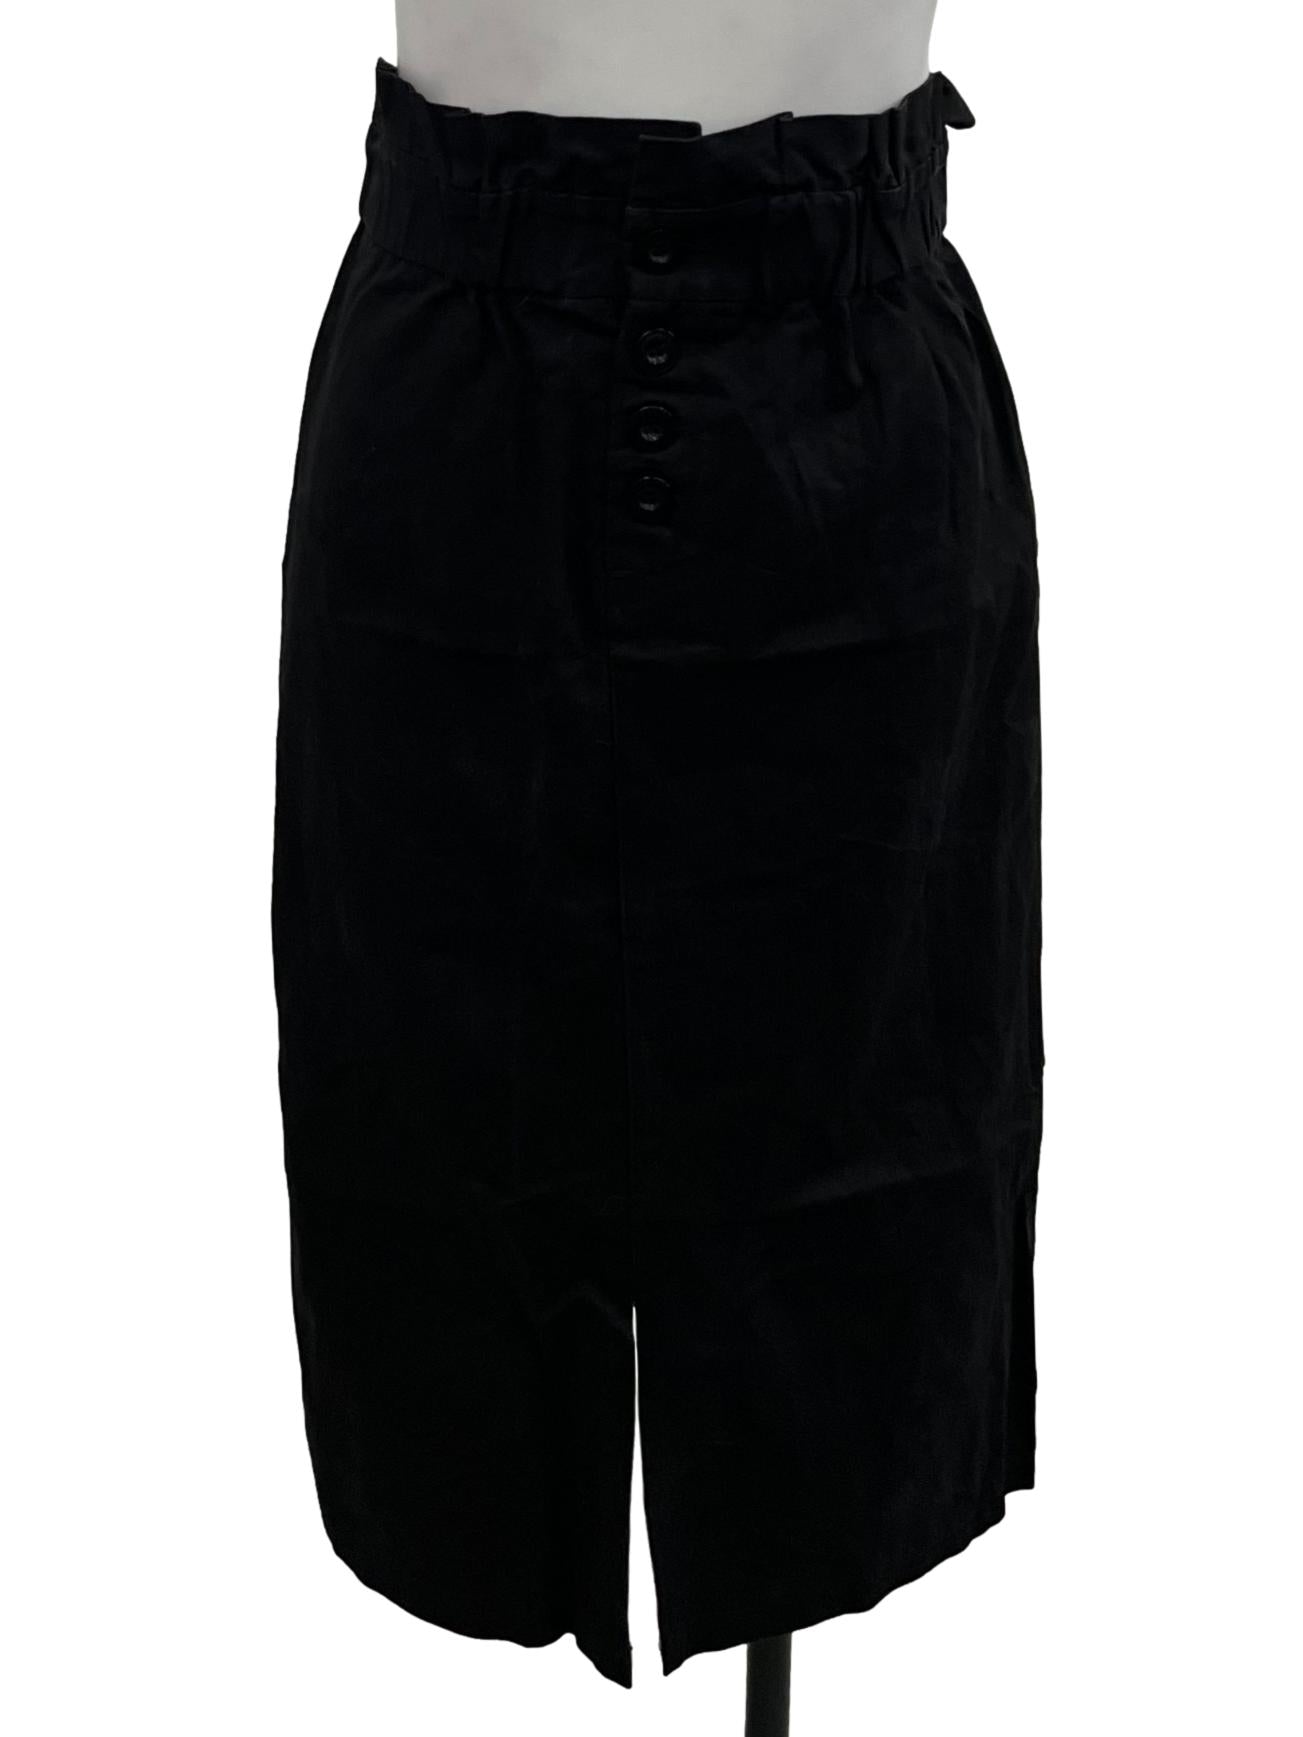 Black High Waisted Half Button Up Skirt